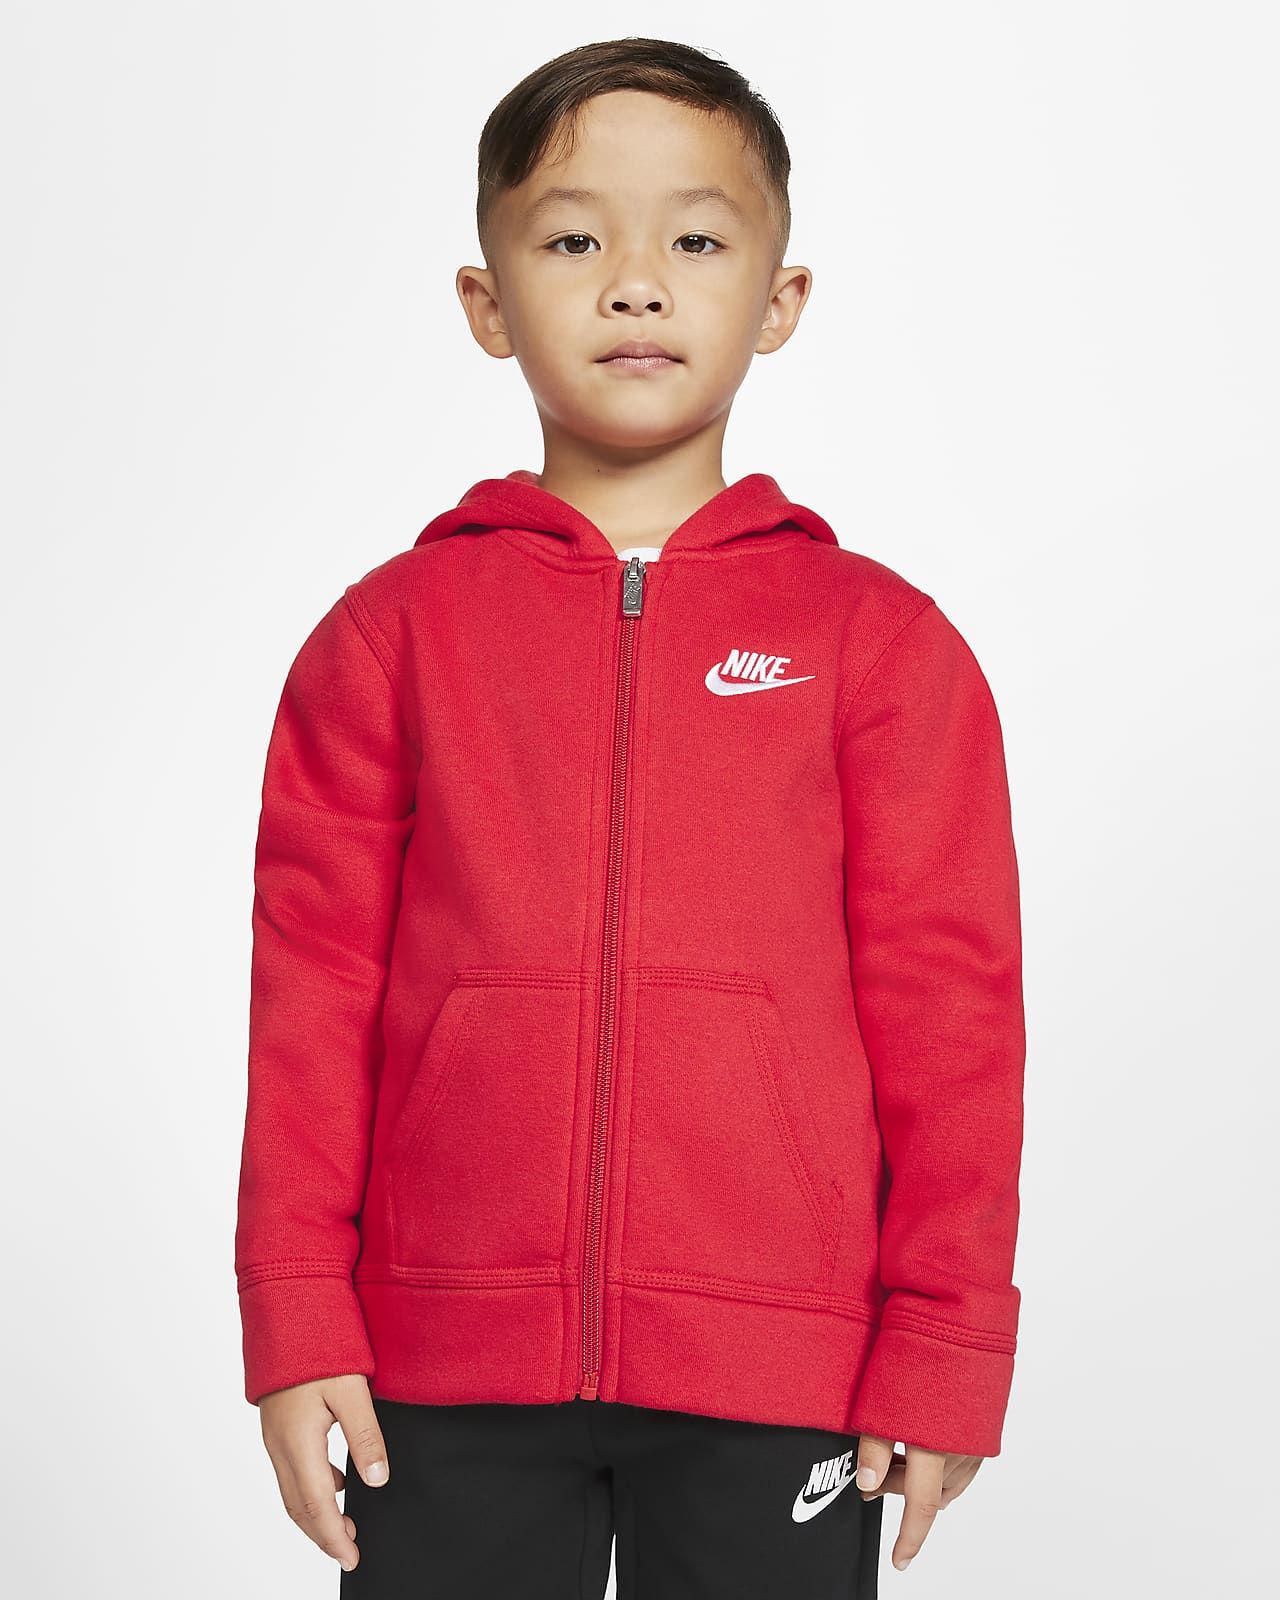 Little Kids' Full-Zip Hoodie | Nike (US)